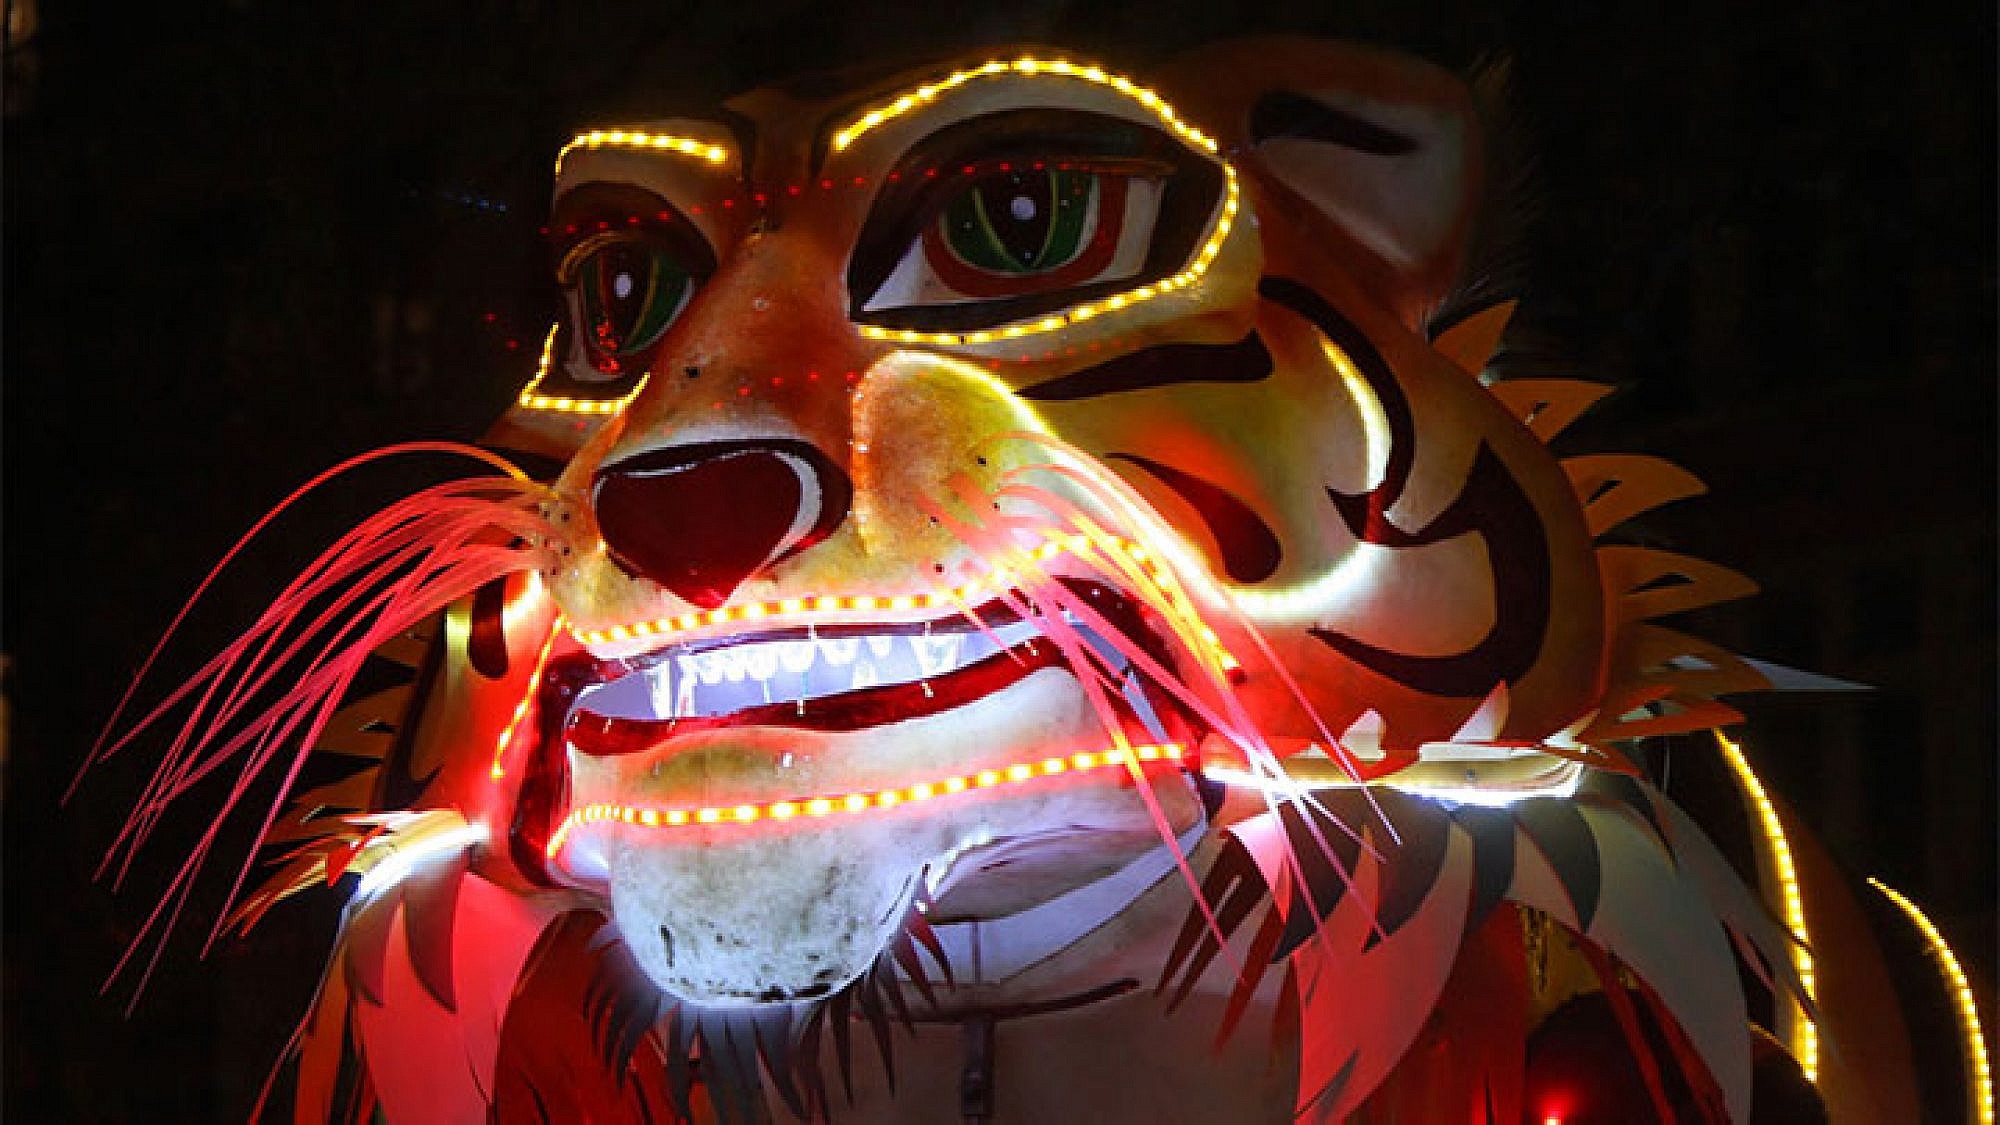 אחד ממייצגי התאורה בפסטיבל האורות של ליון. צילום: Shutterstock